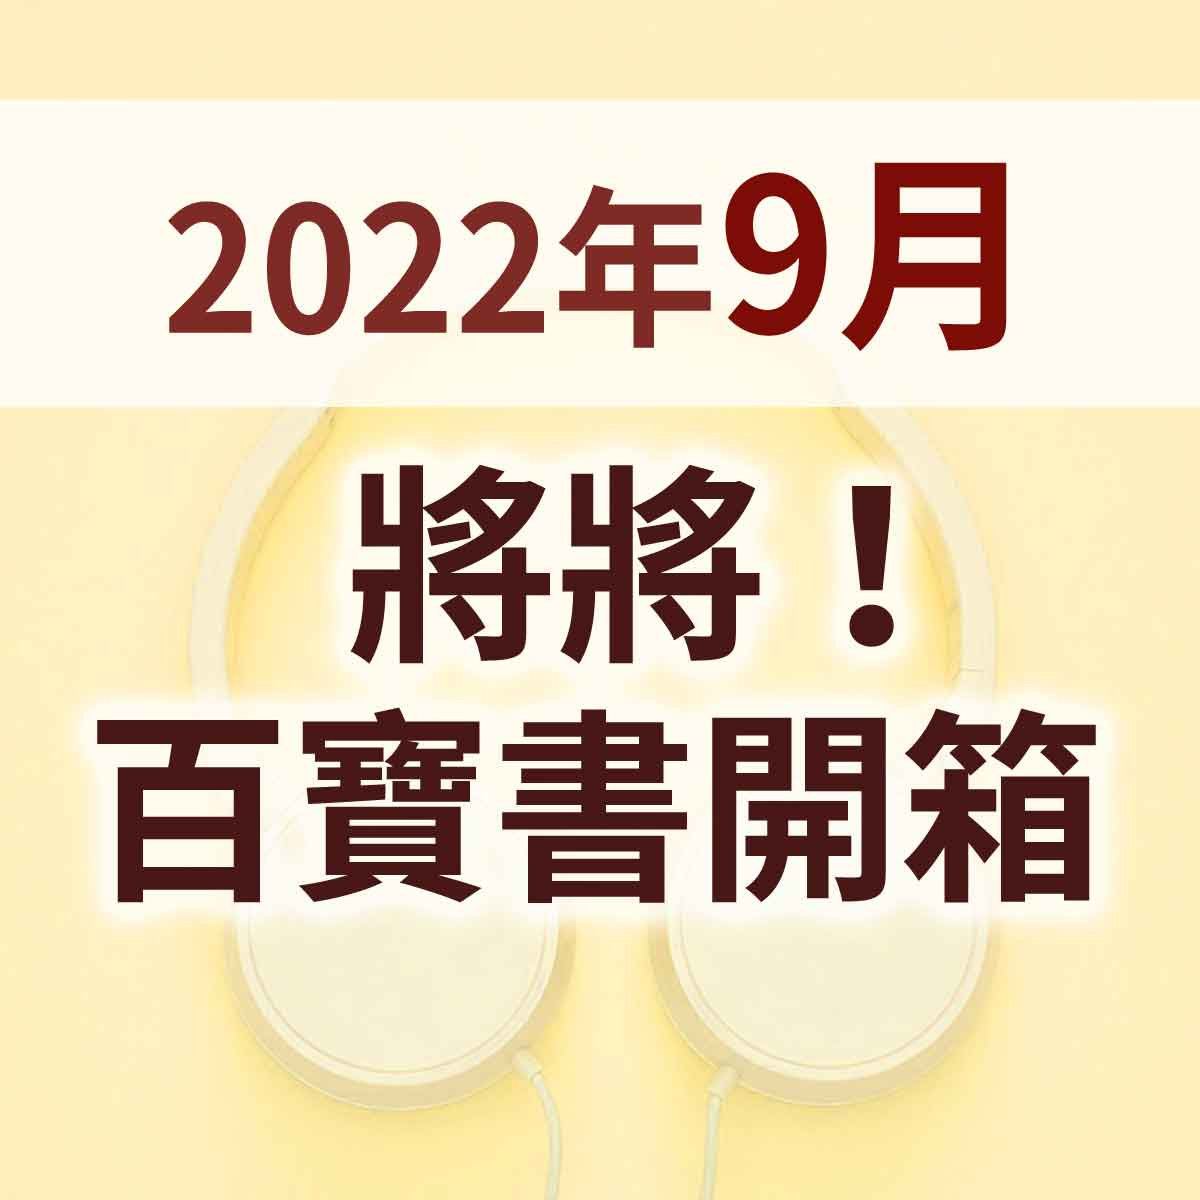 2022年9月 - 將將百寶書~開箱!!首播精選封面圖